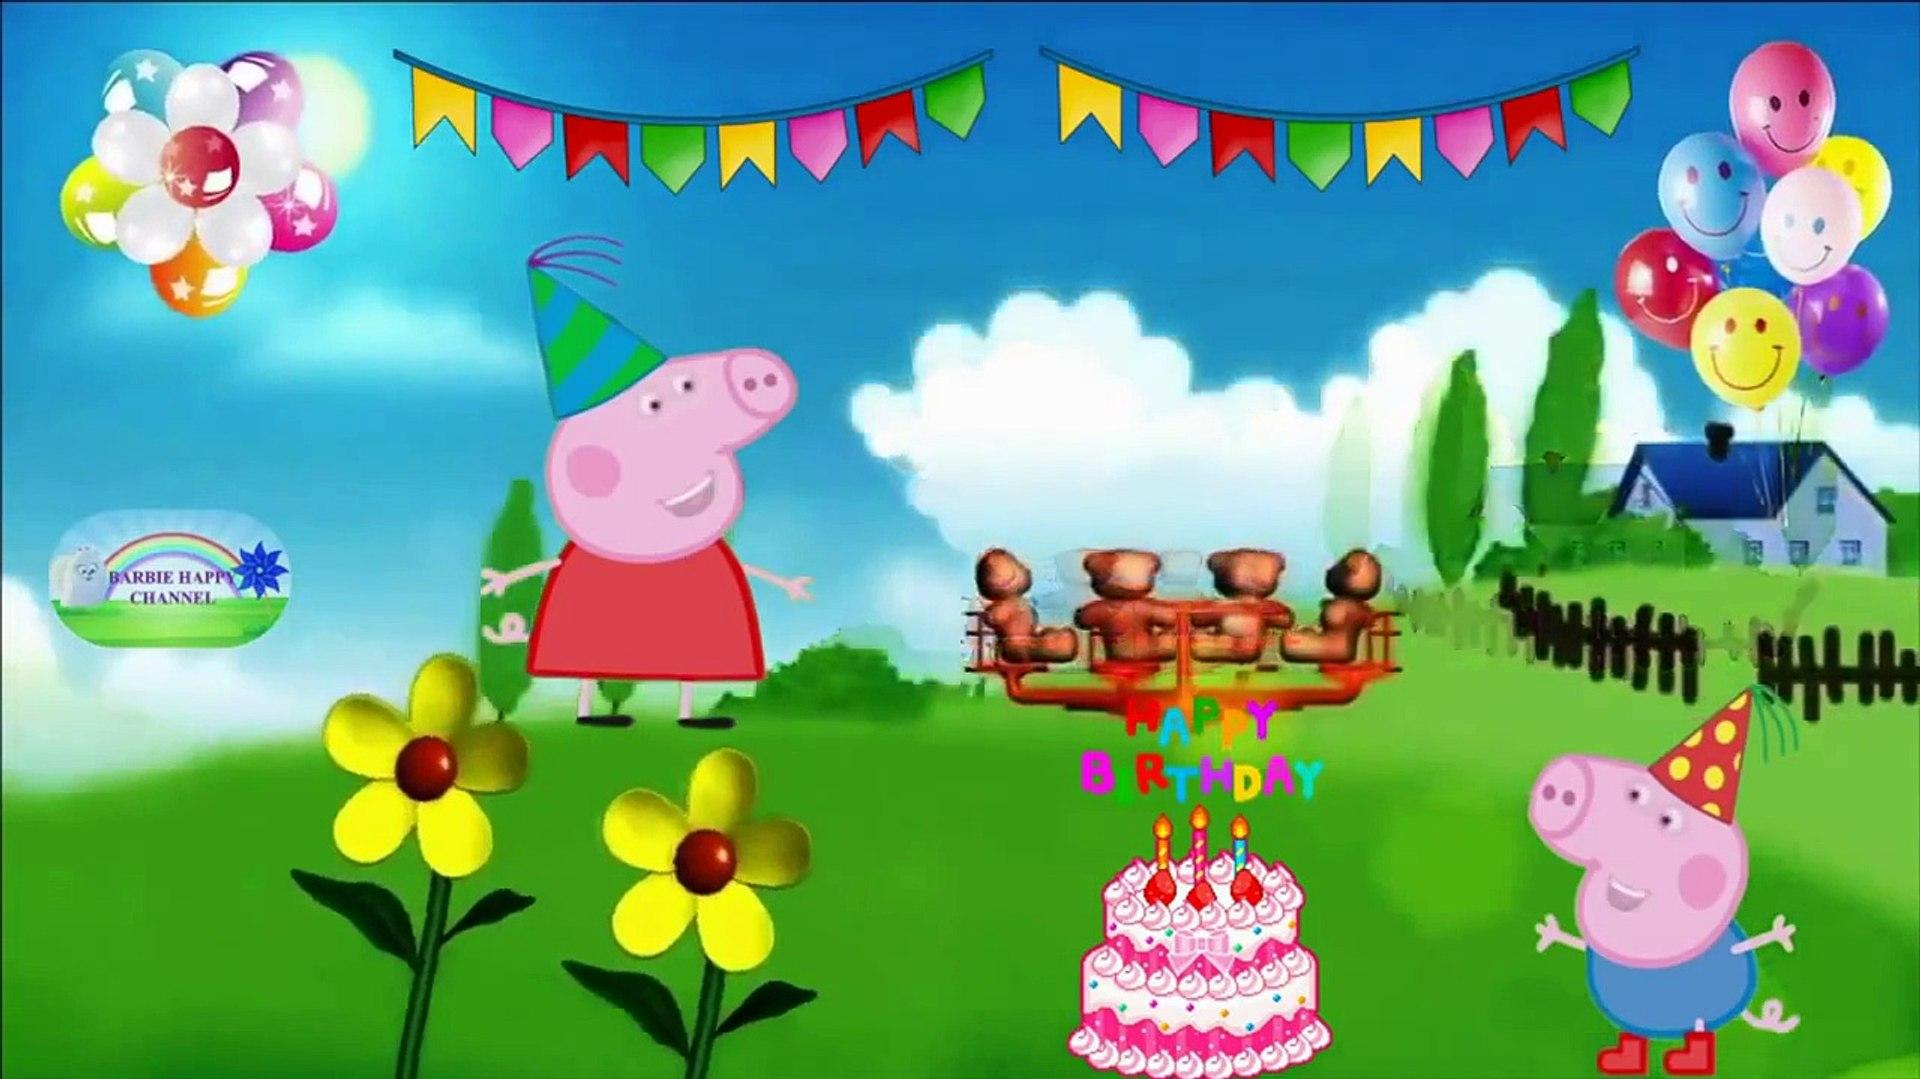 Happy BirtHDay Song Peppa Pig Nursery Rhymes Kids Songs And